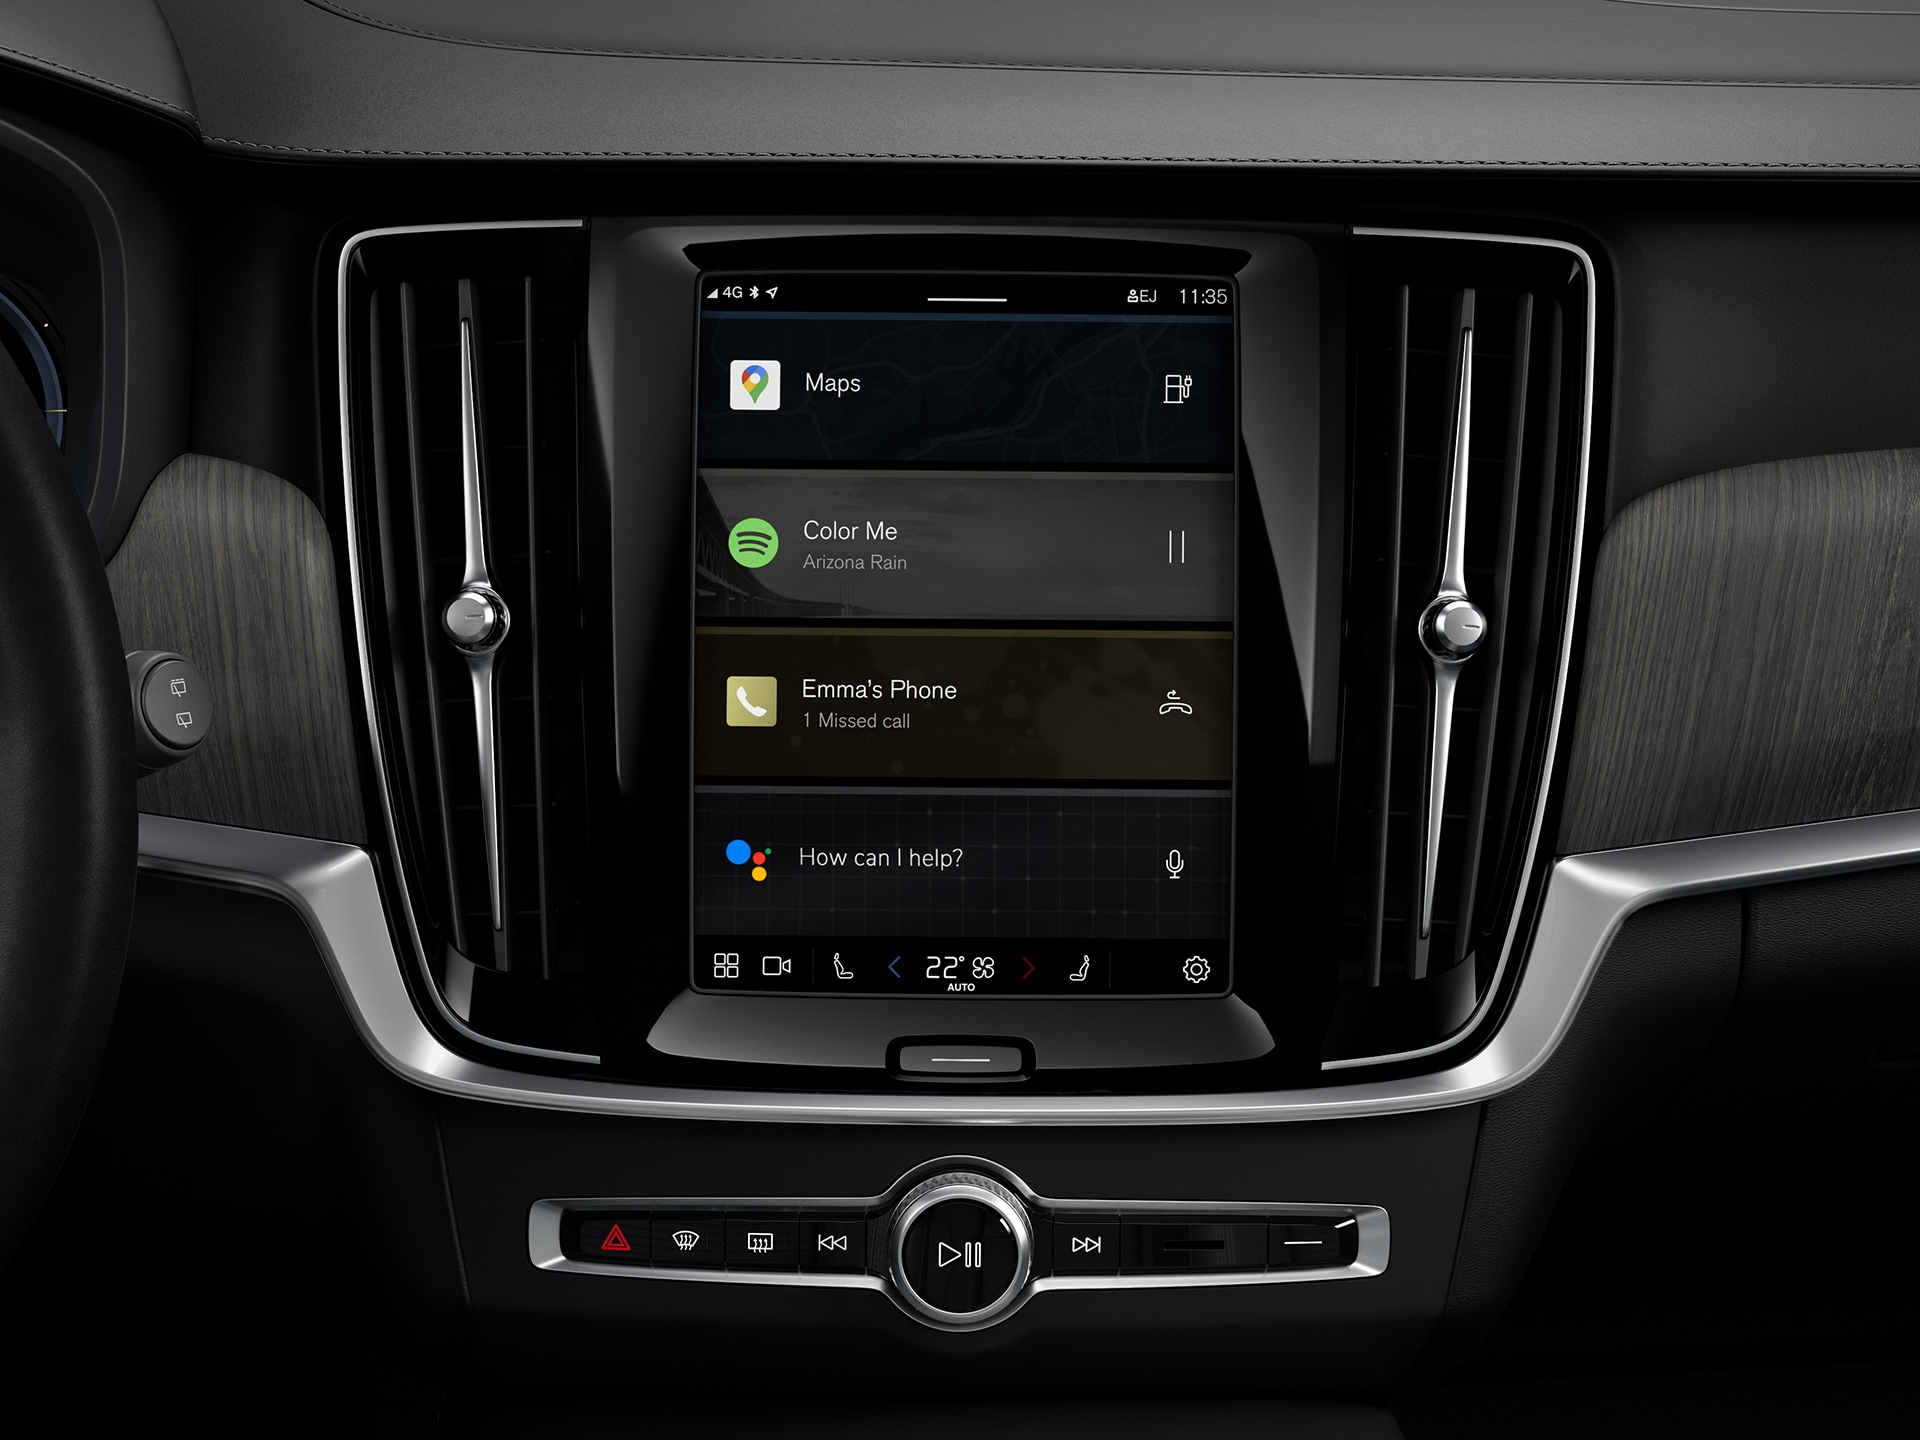 Consola central de un vehículo familiar Volvo mostrando el sistema de información y entretenimiento de Google integrado.